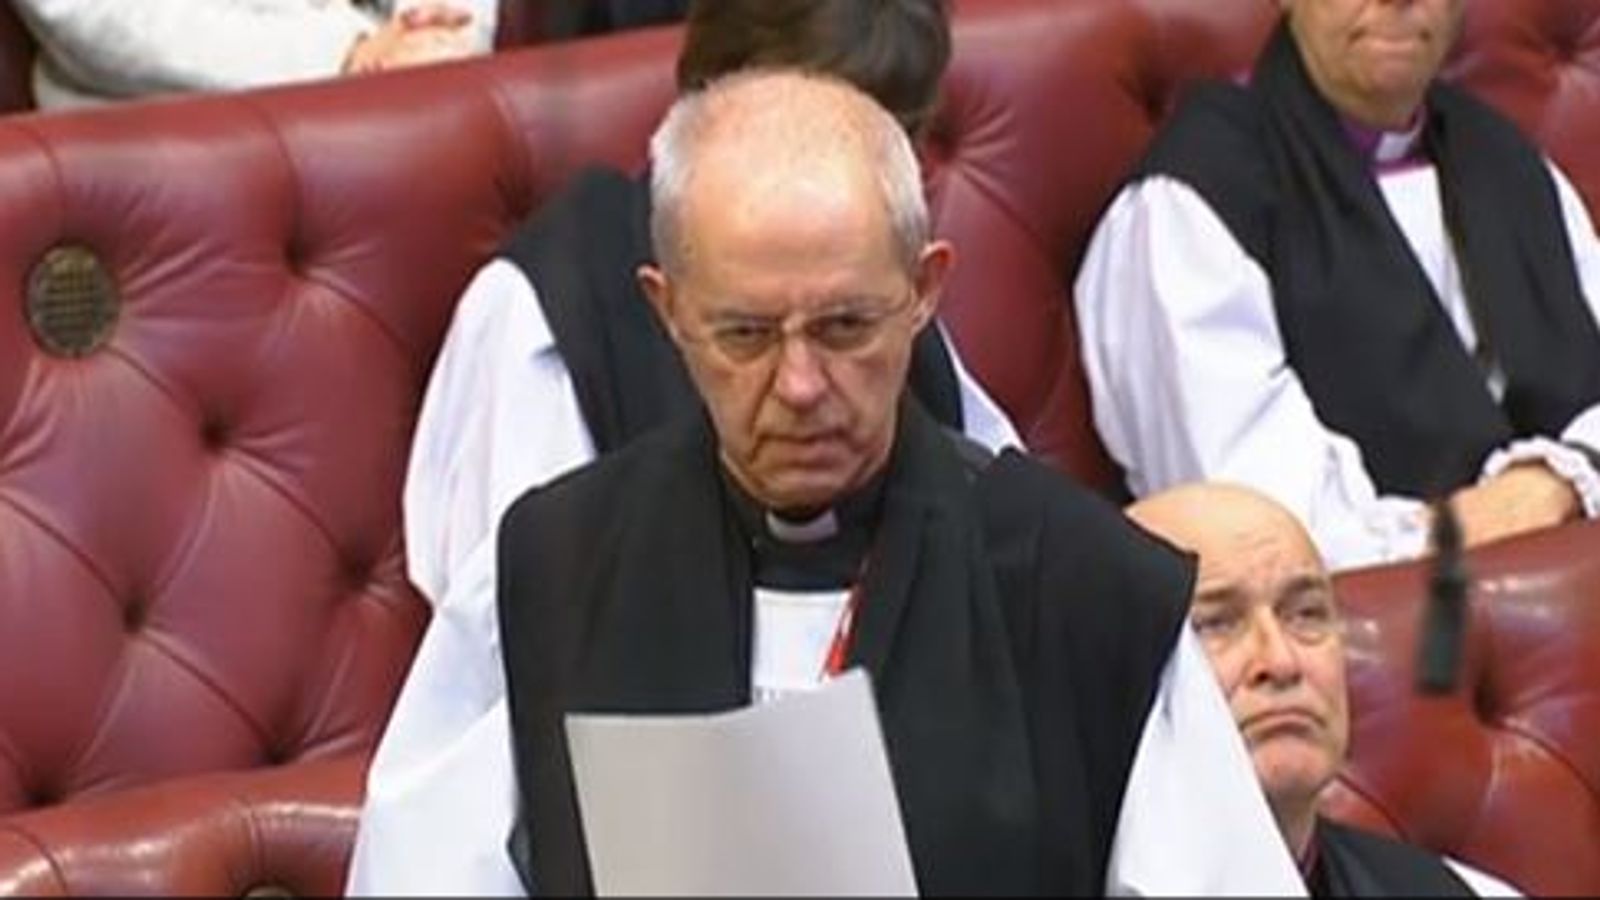 Архиепископът на Кентърбъри Джъстин Уелби предупреждава, че промените във визите ще навредят на семейните отношения